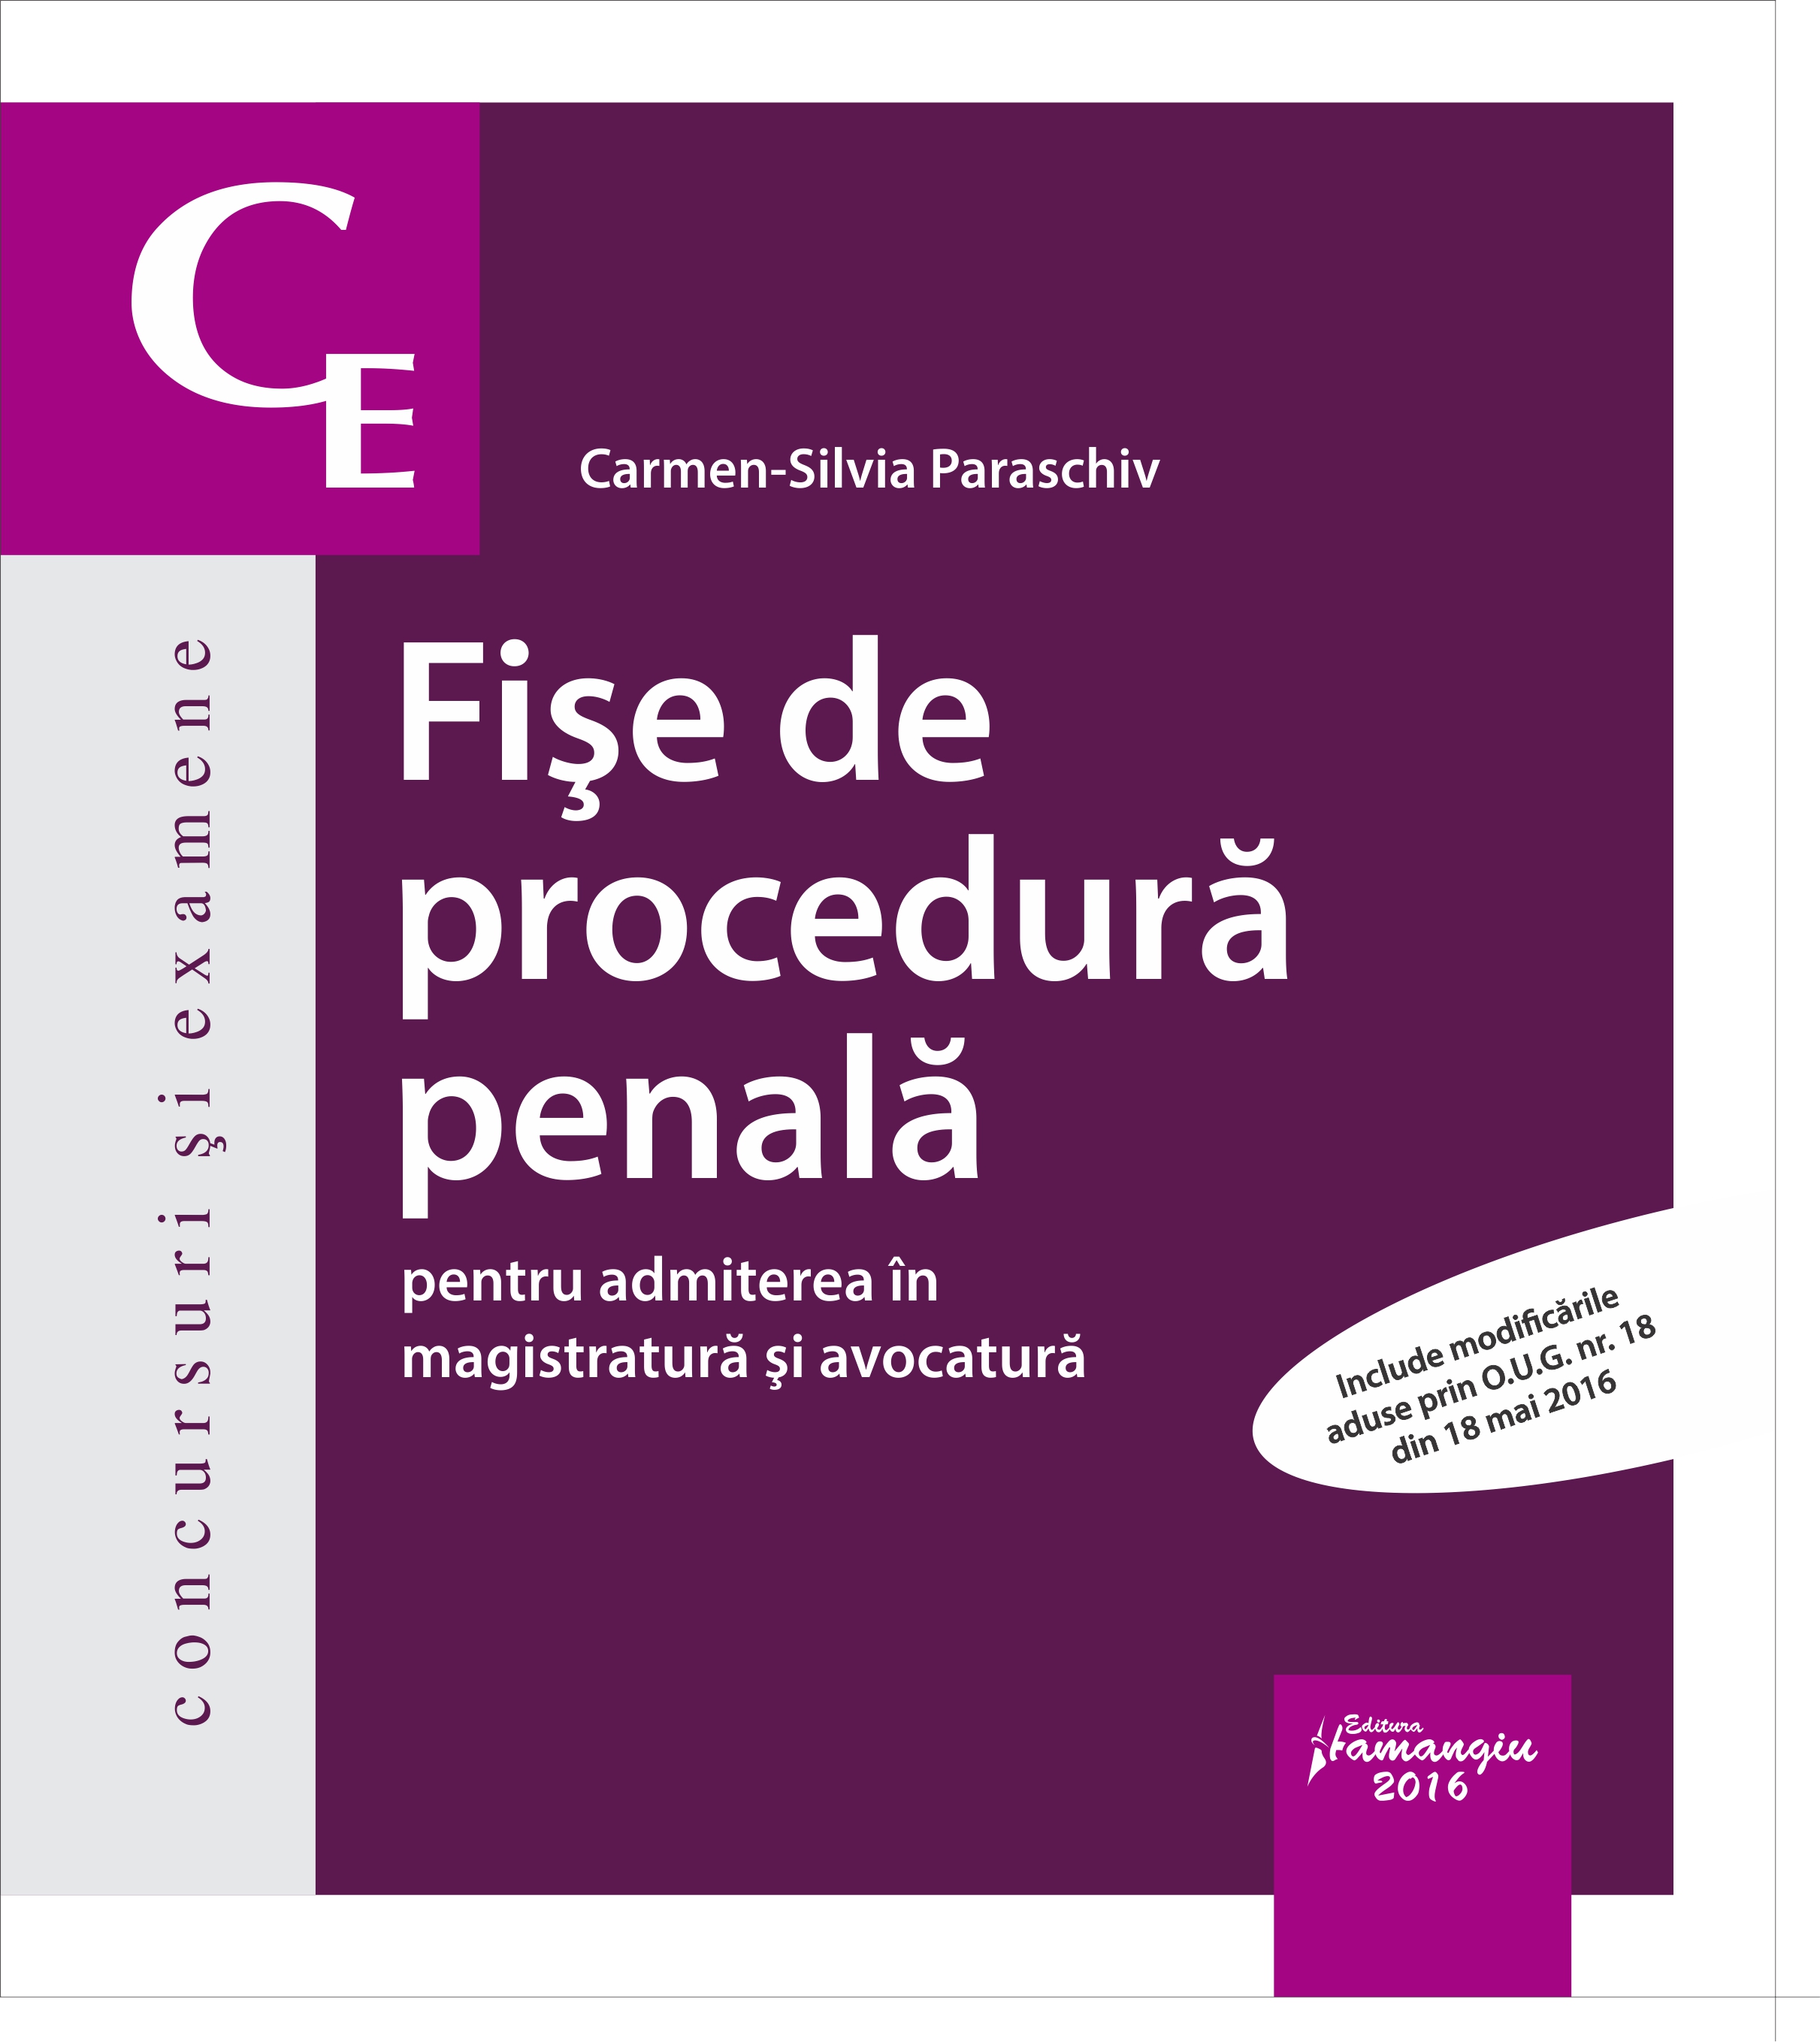 Fise de procedura penala pentru admiterea in magistratura si avocatura - Carmen-Silvia Paraschiv